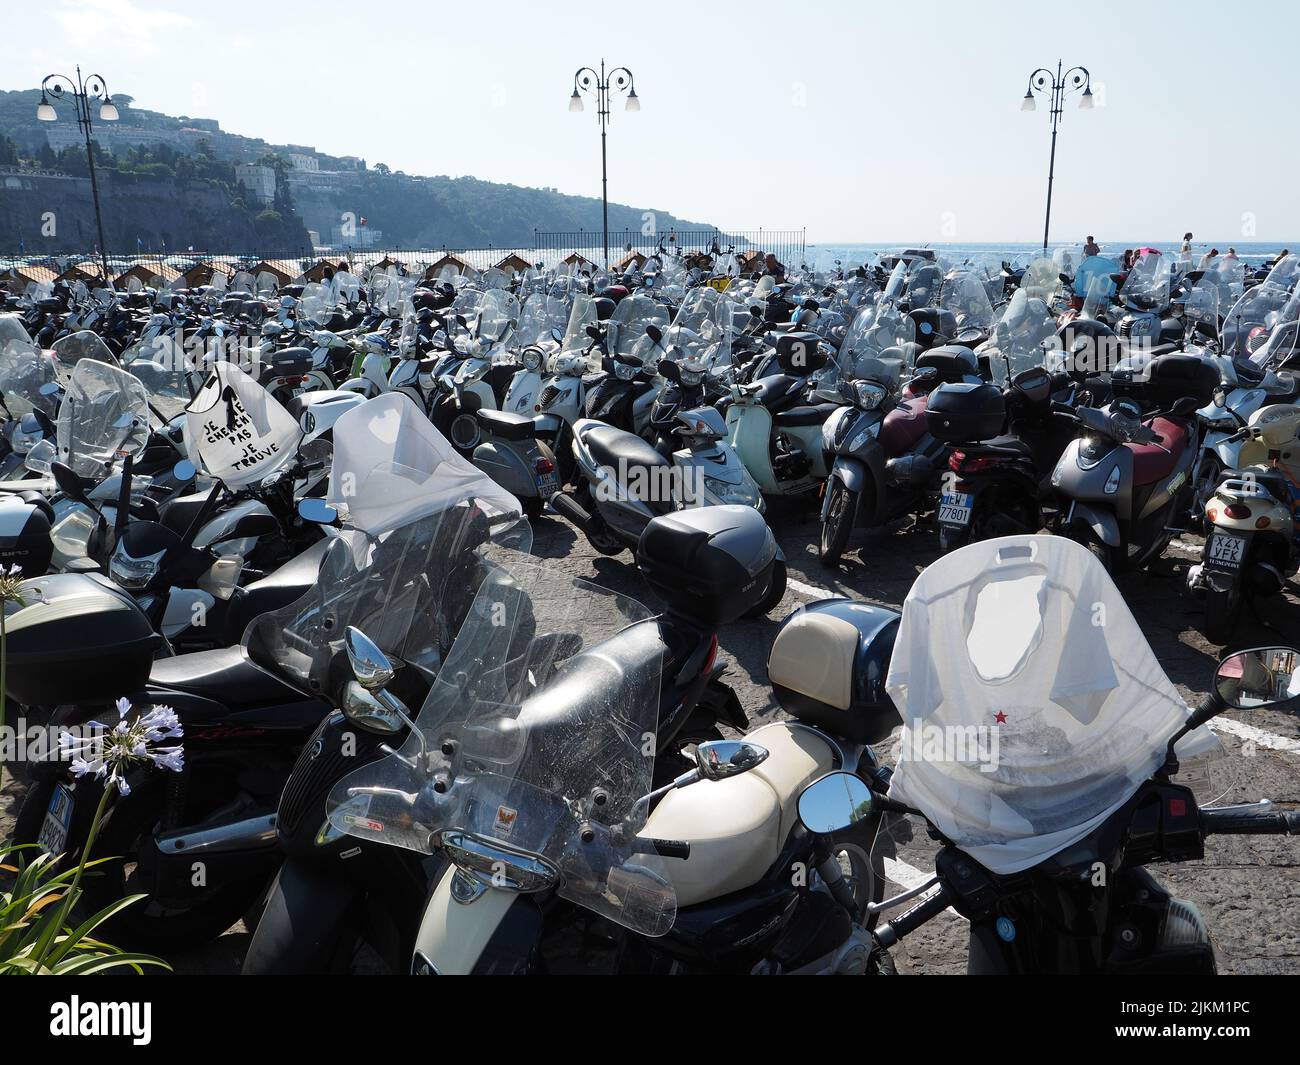 Gli scooter sono molto popolari in Italia, questo è un parcheggio per scooter a Sorrento, Campania, Italia Foto Stock